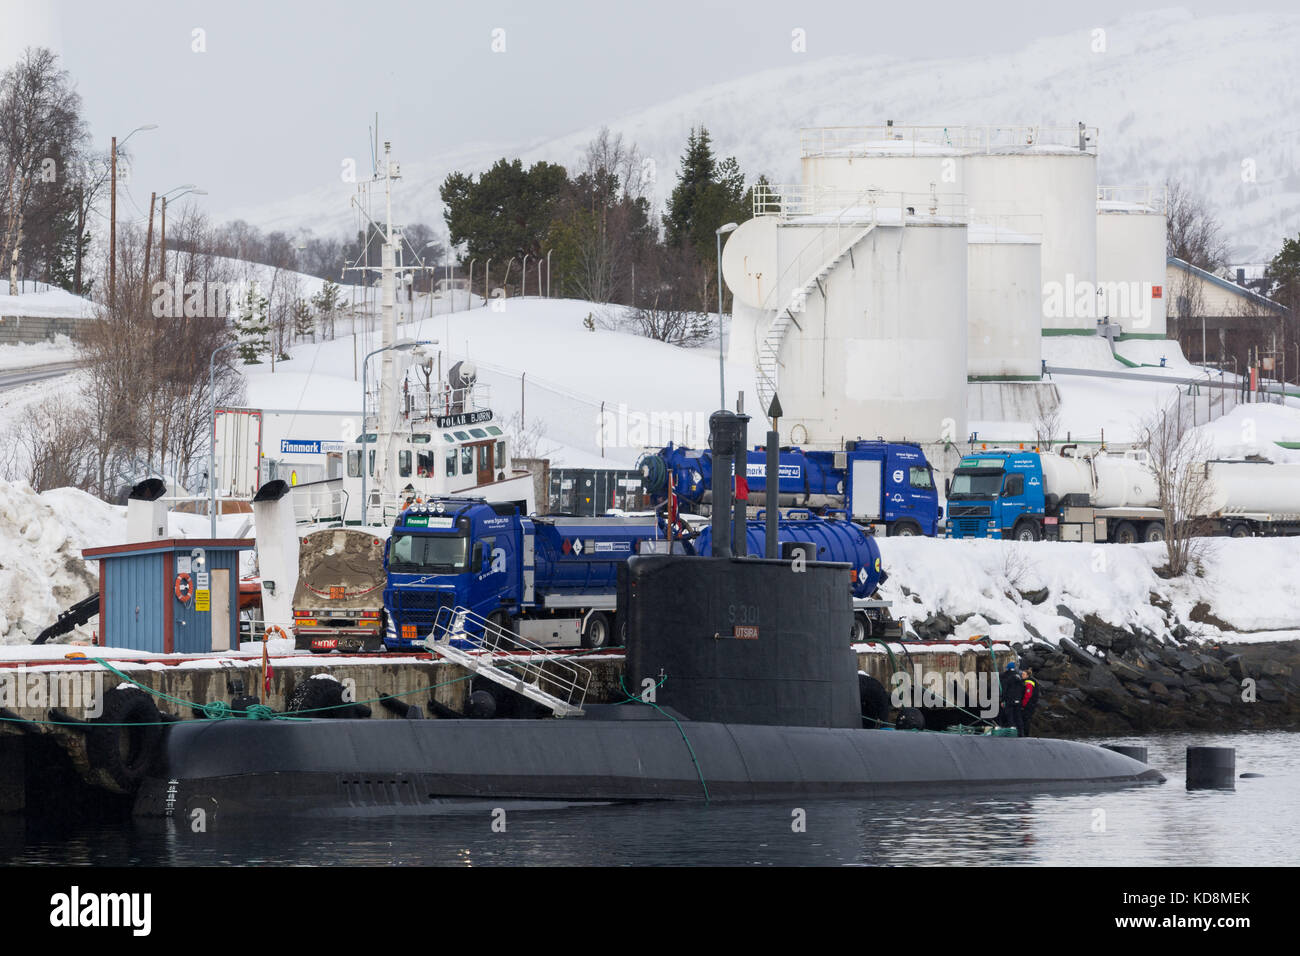 Submarino noruego ula-class en harbour Foto de stock